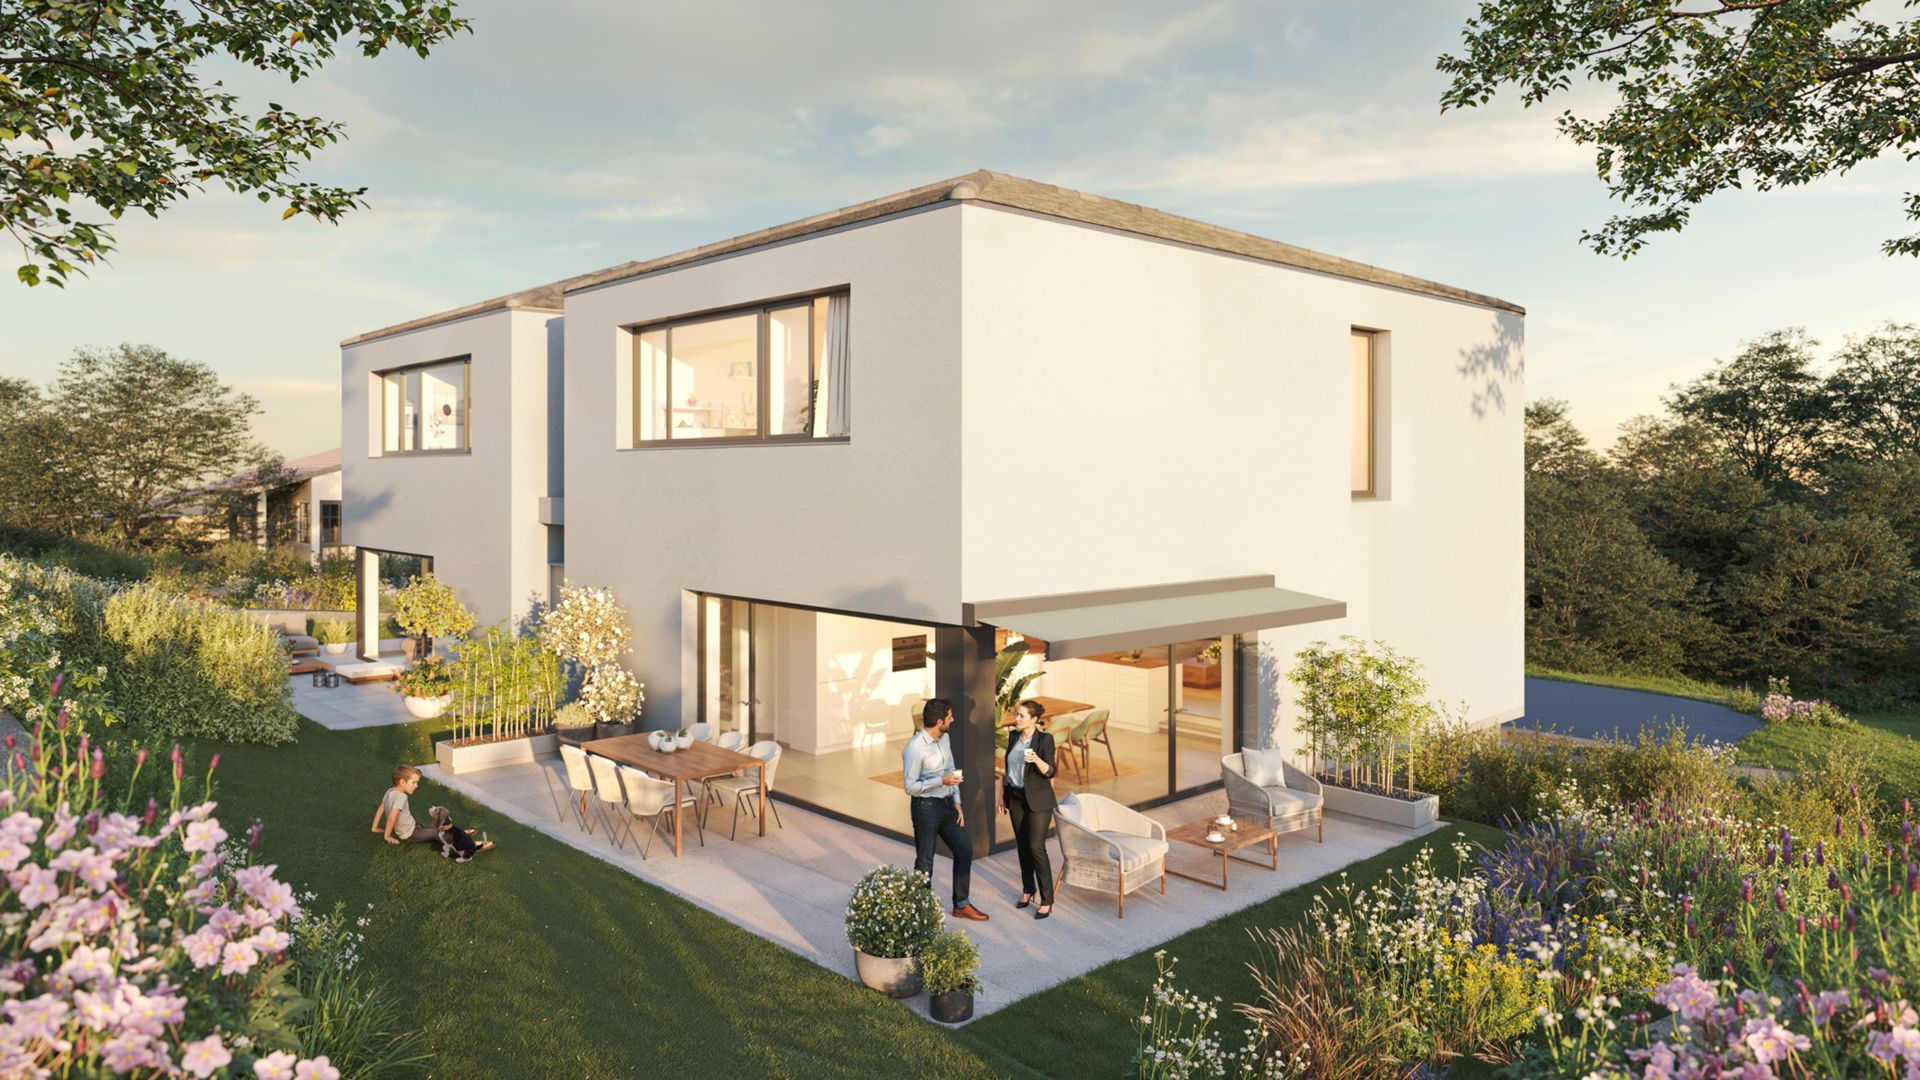 Superbe villa neuve de 185 m2 habitables conçue selon l'aspect du développement durable